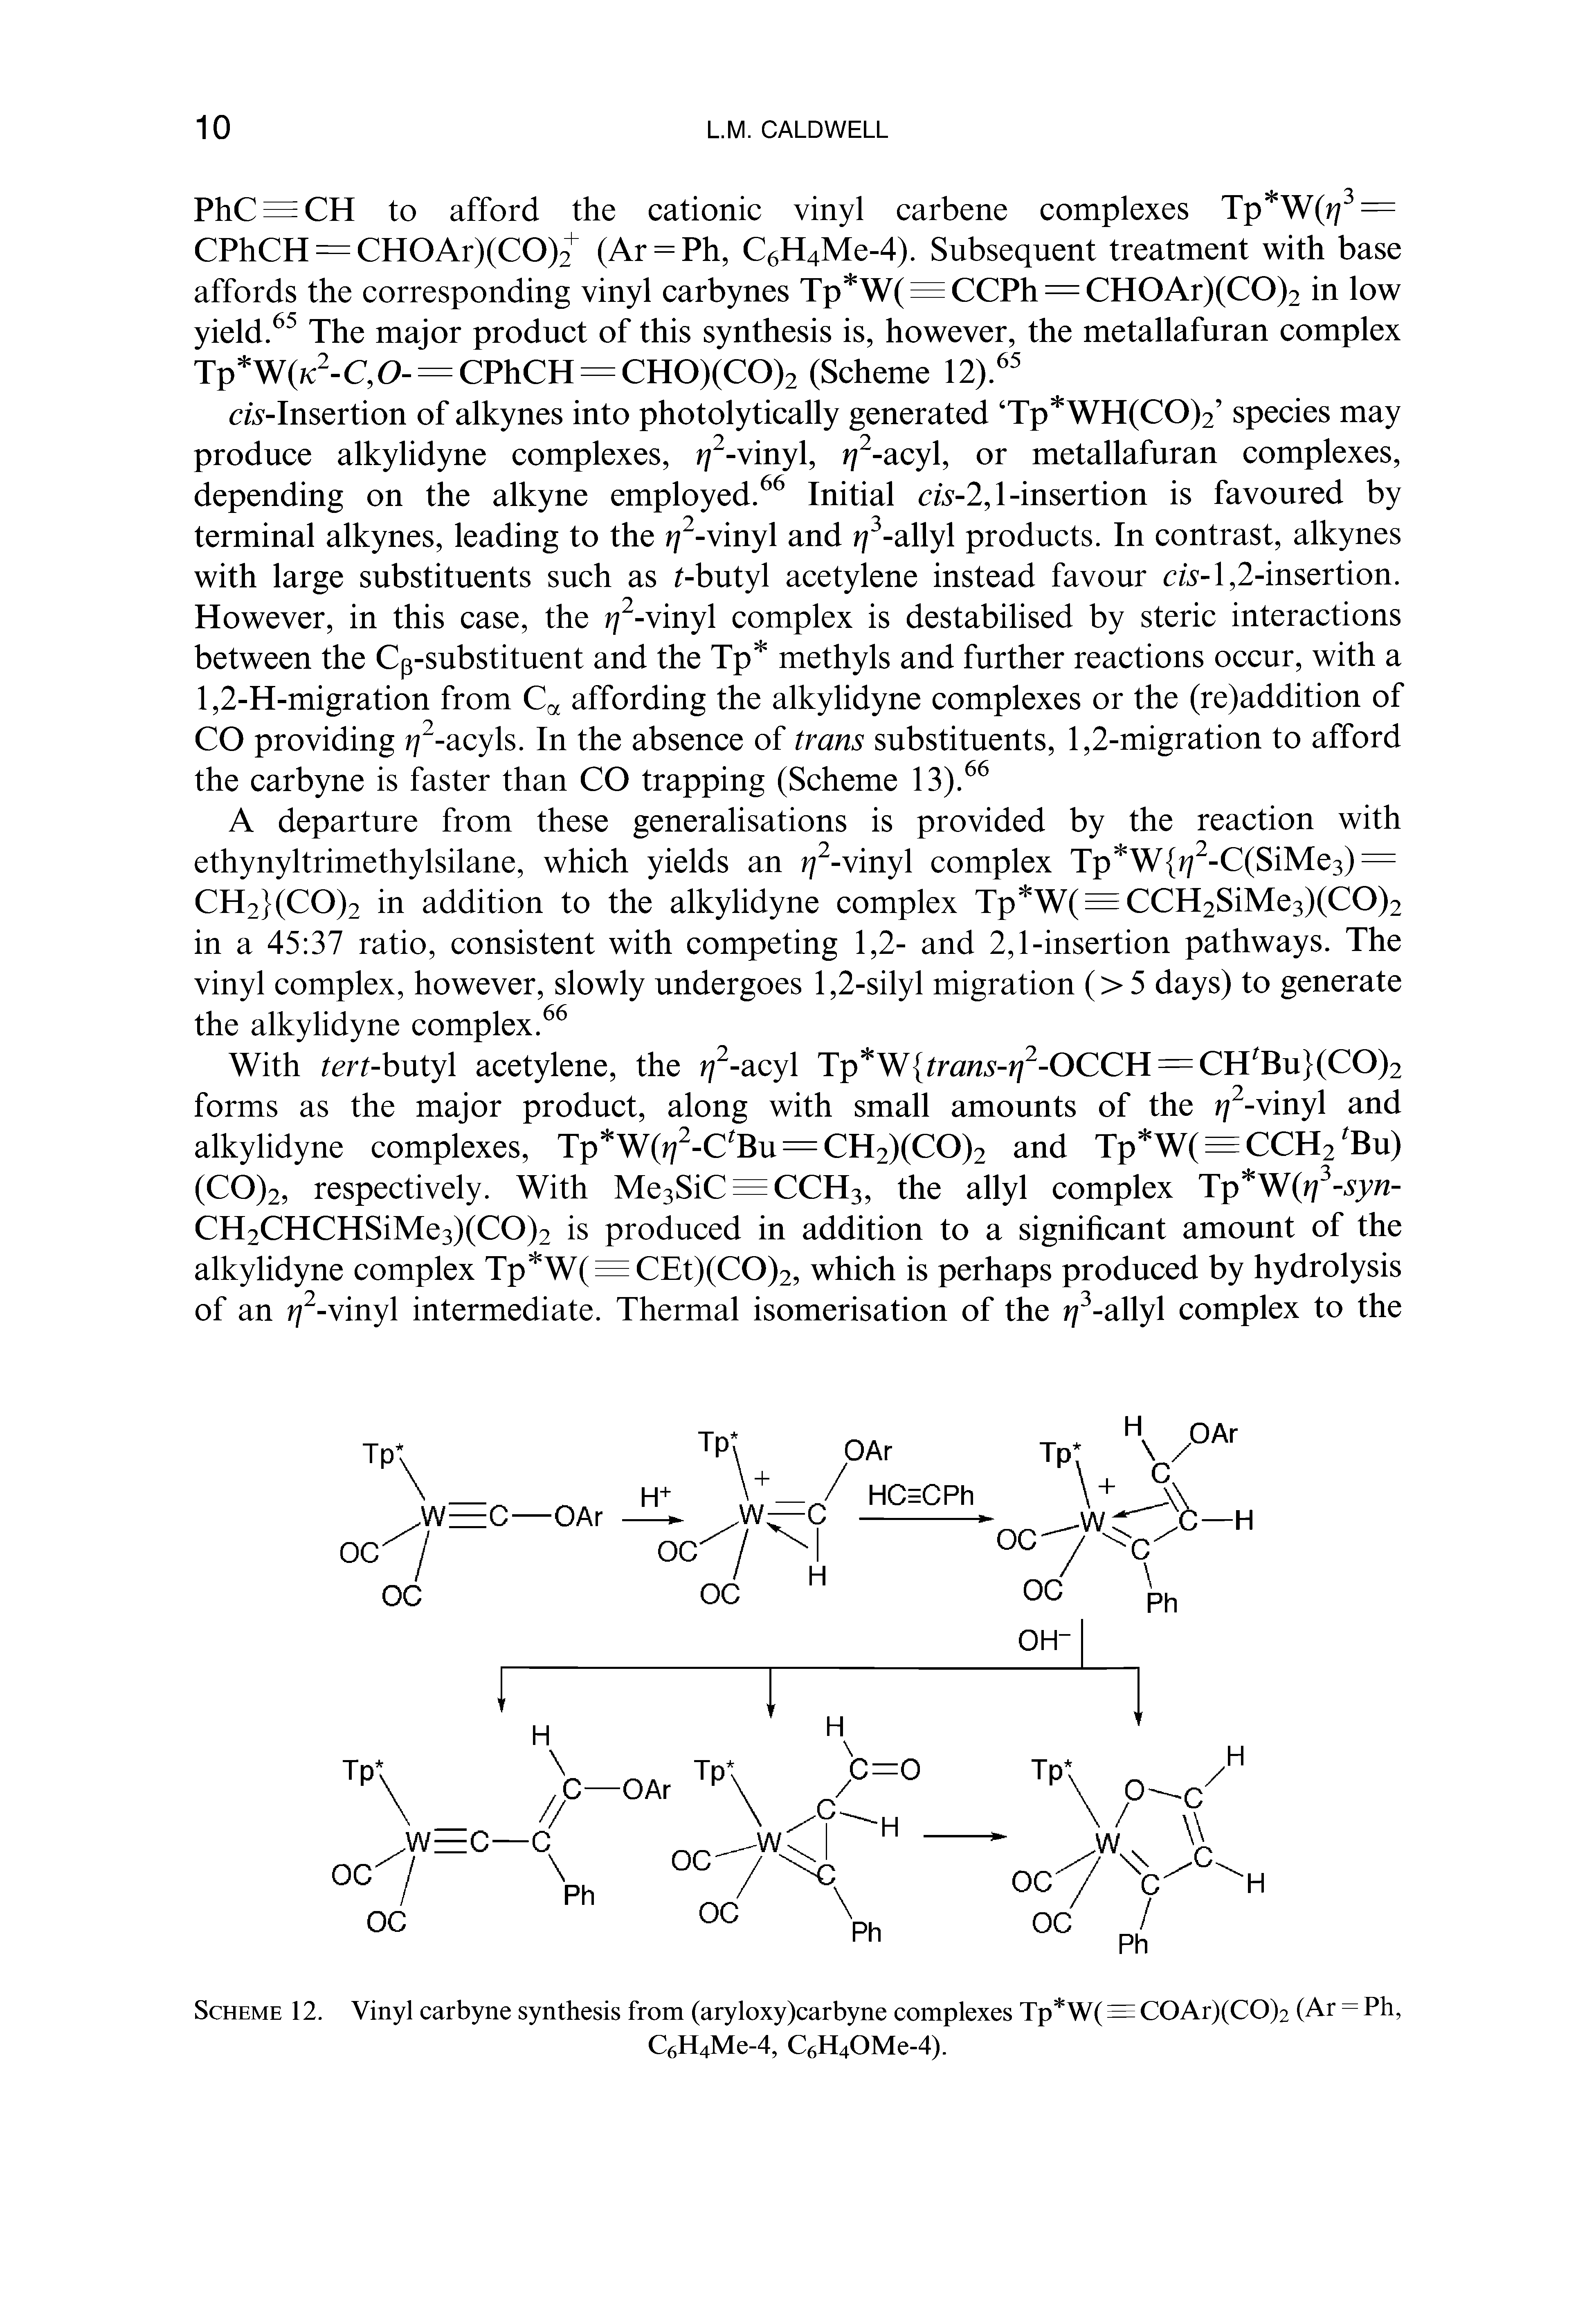 Scheme 12. Vinyl carbyne synthesis from (aryloxy)carbyne complexes Tp W(=COAr)(CO)2 (Ar - Ph,...